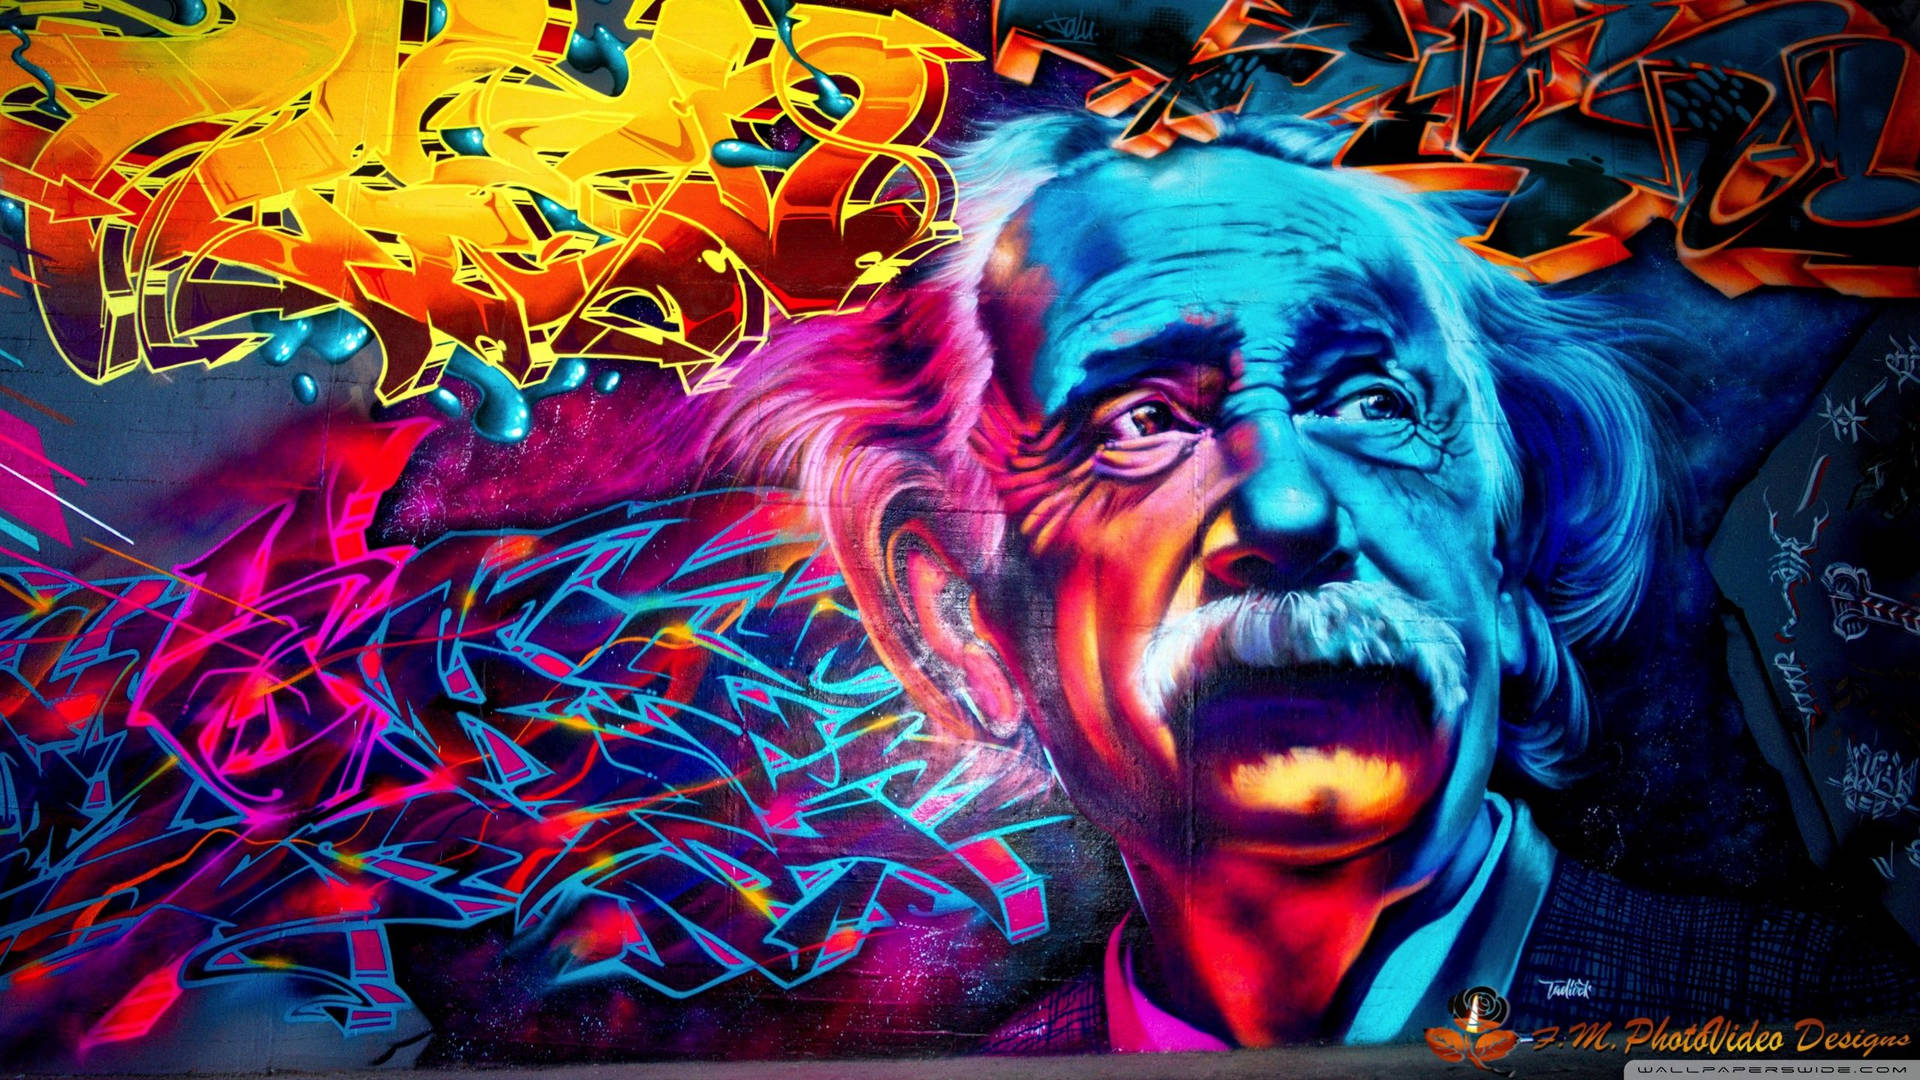 Street Art Of Albert Einstein Wallpaper